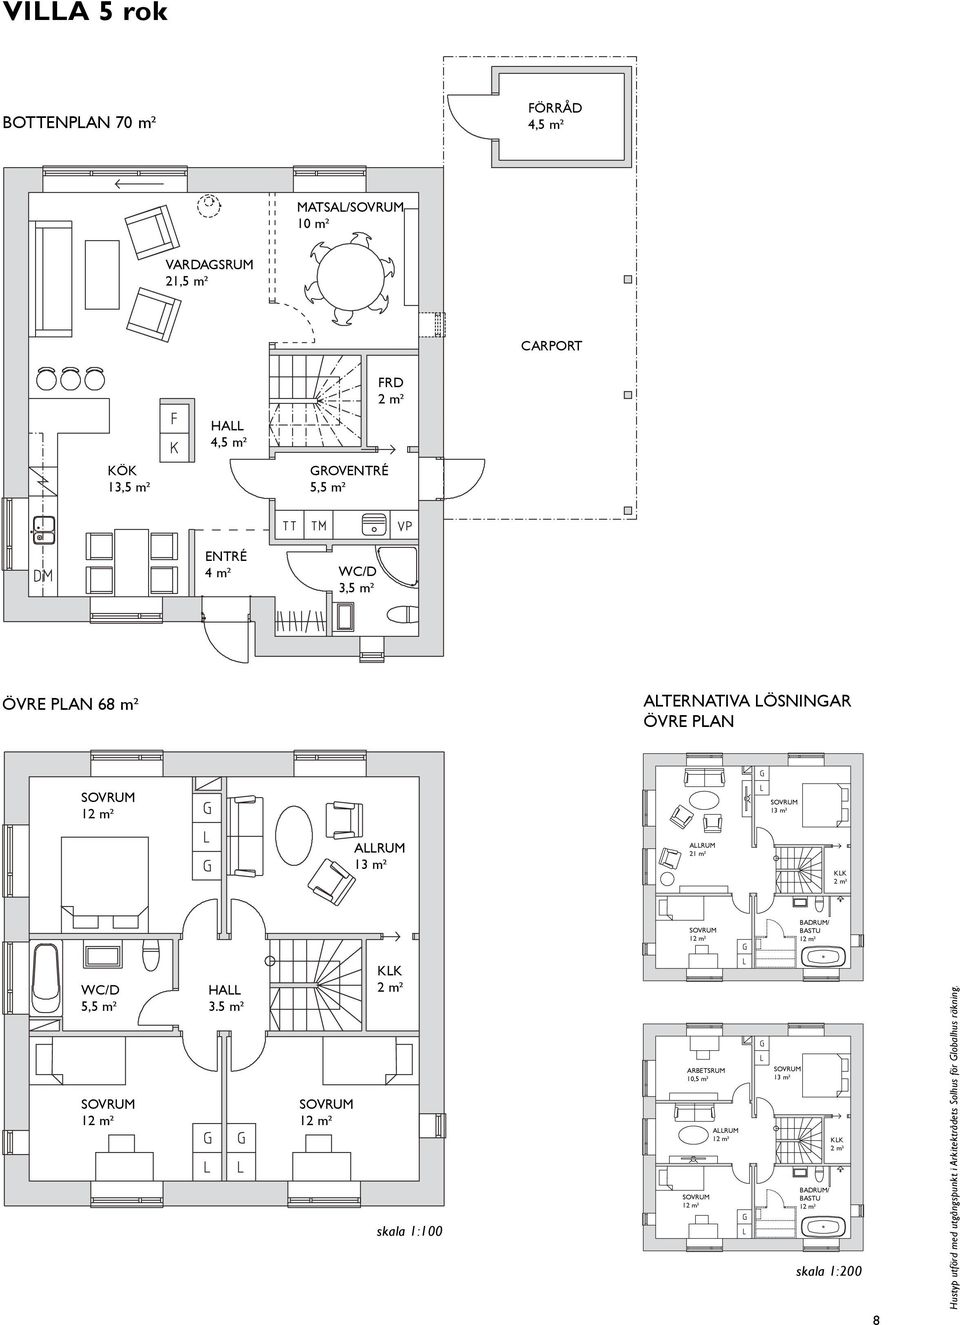 m² KLK 2 m² 12 m² BADRUM/ BASTU 12 m² WC/D 5,5 m² 12 m² HALL 3.